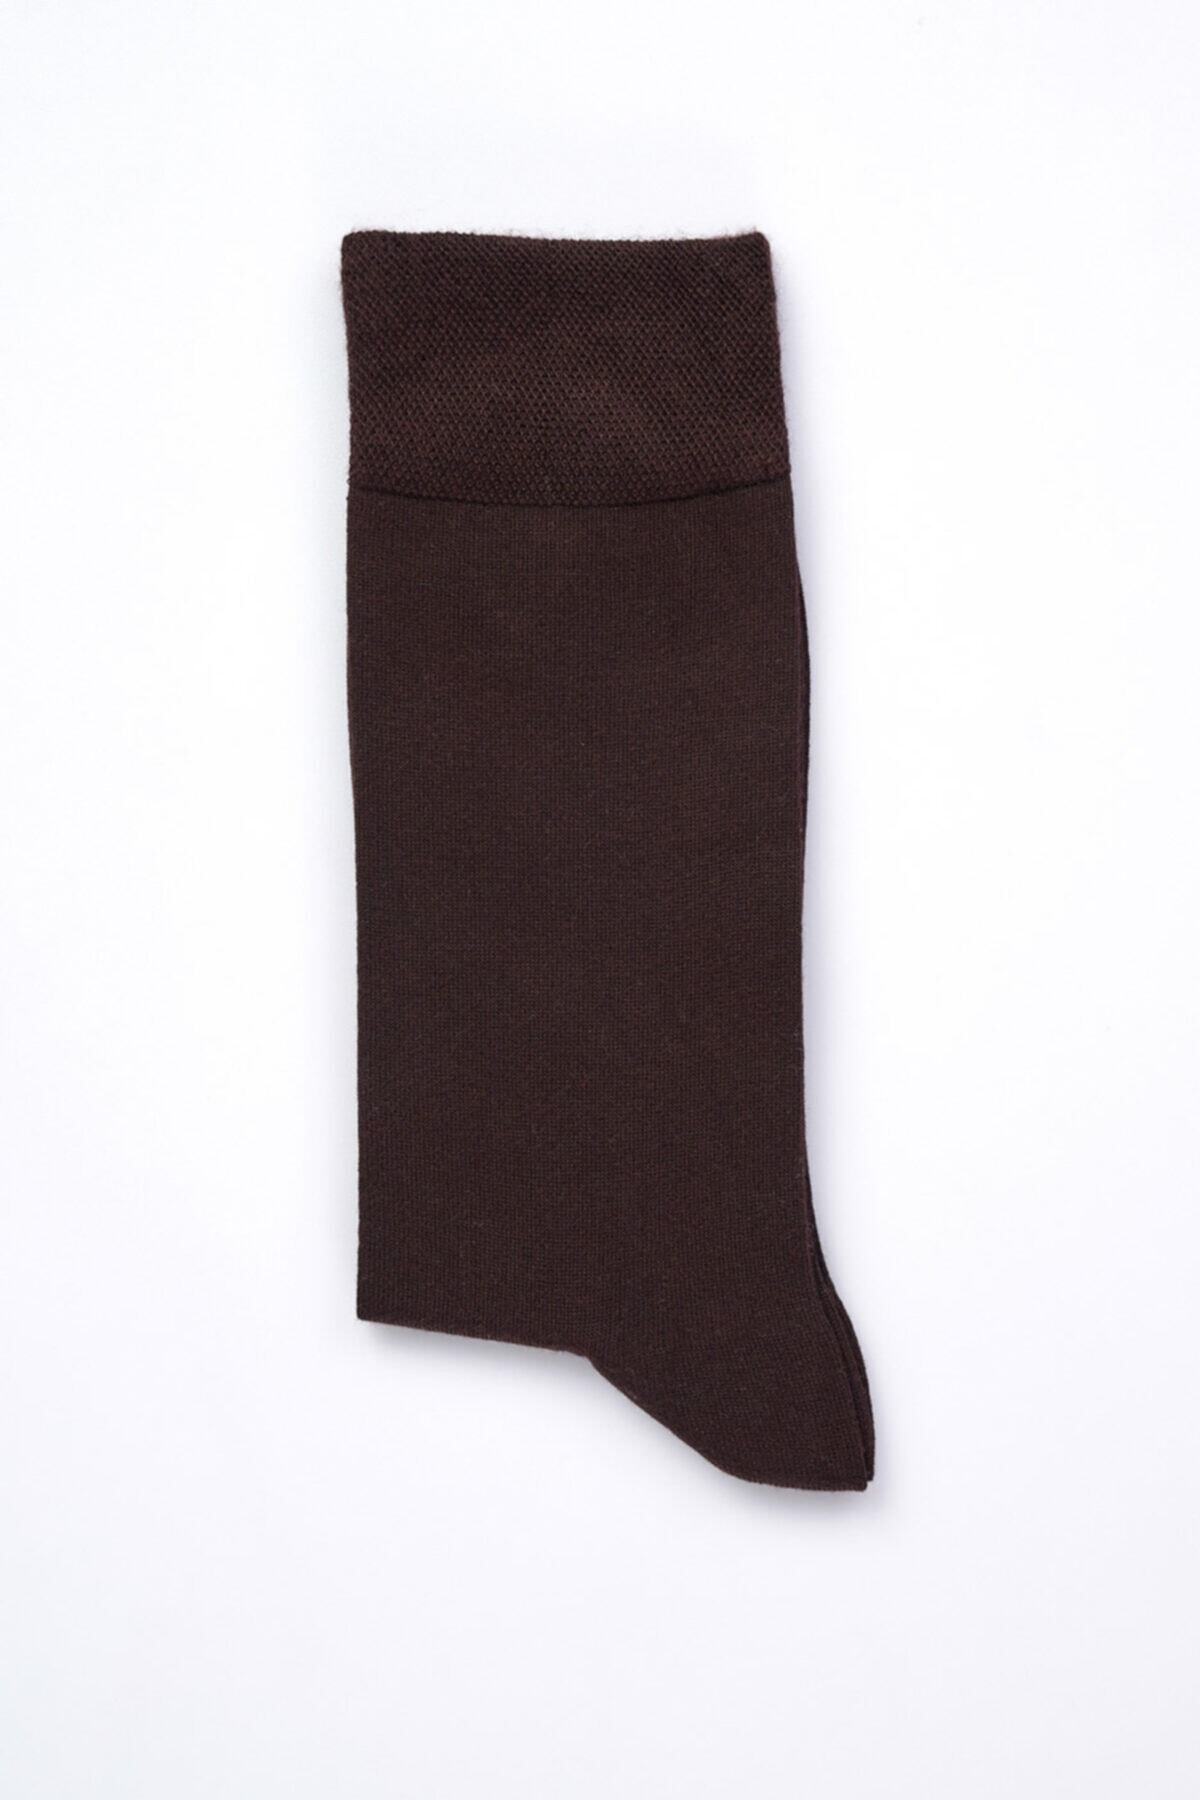 Dagi Men's Brown Micro Modal Socks